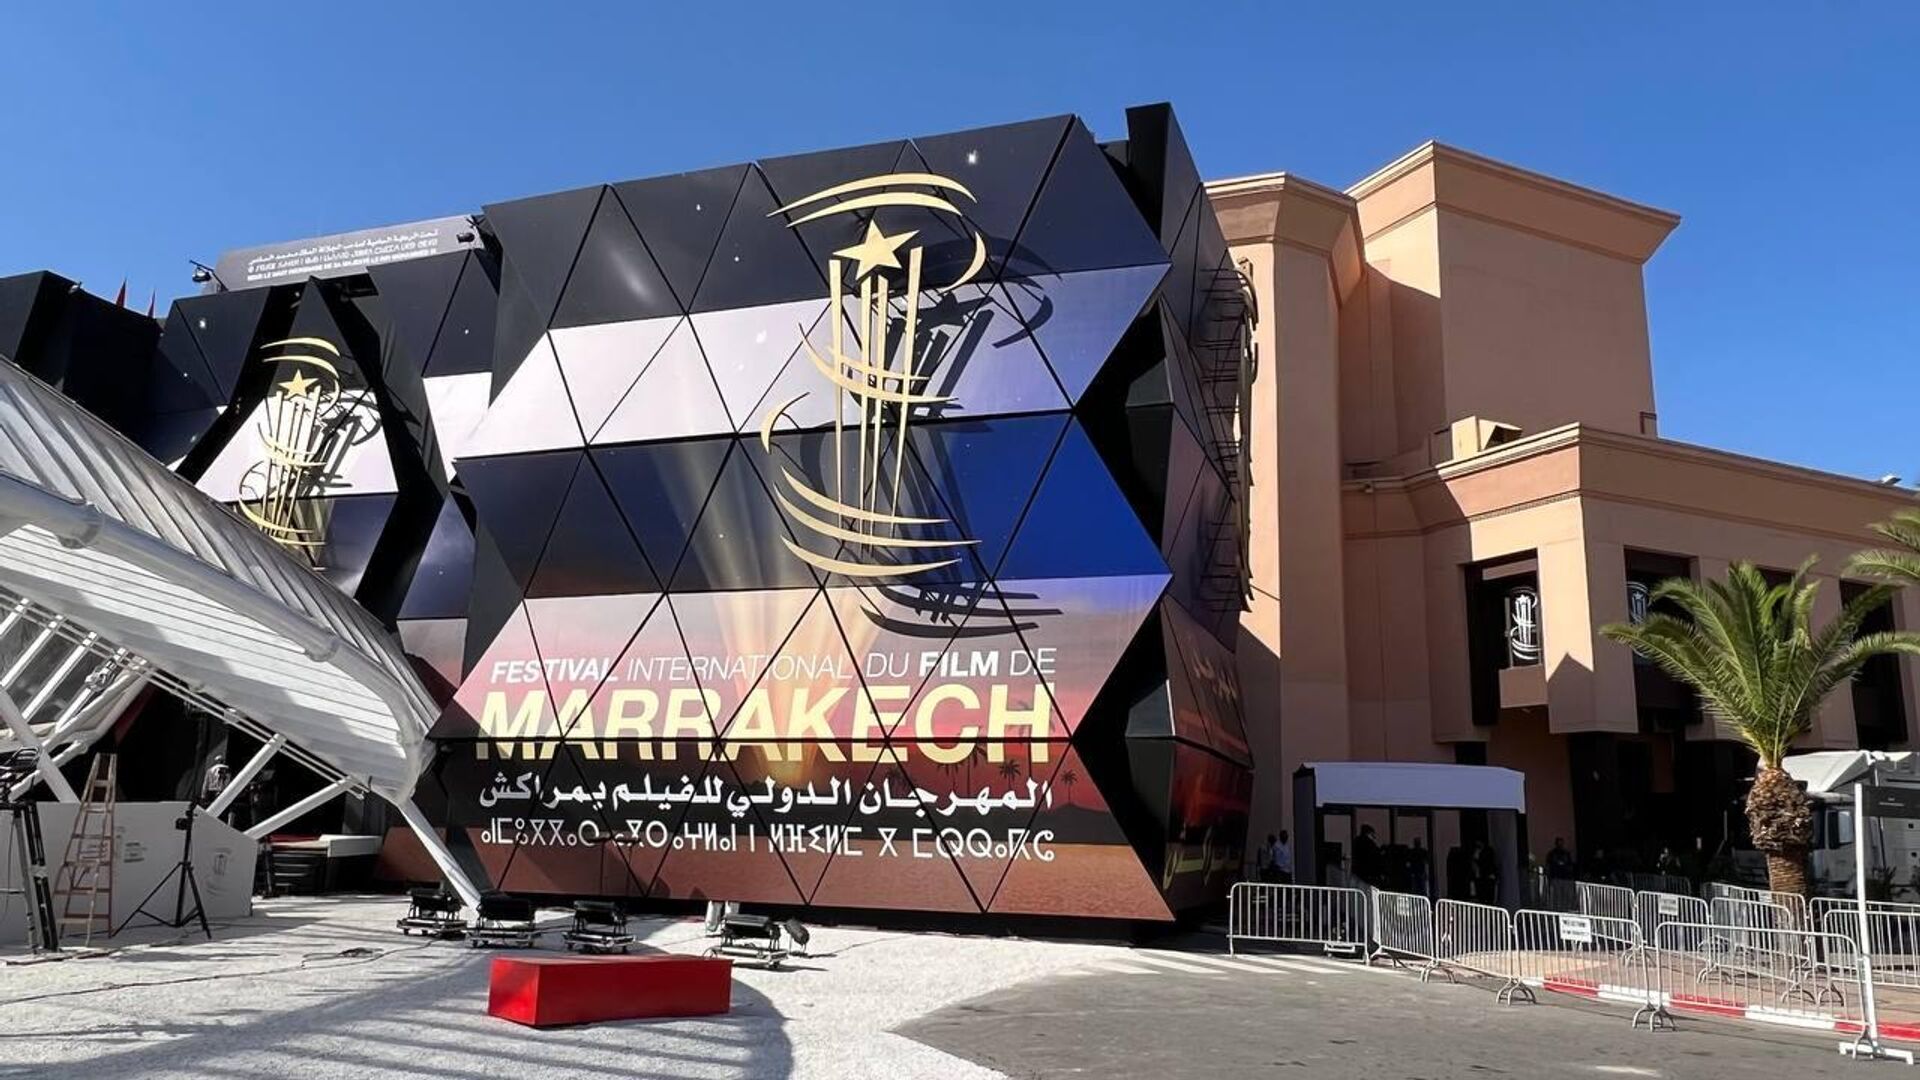 واكريم: عدم إلغاء مهرجان مراكش فرصة للتسويق للمدينة الحمراء وطمأنة السياح